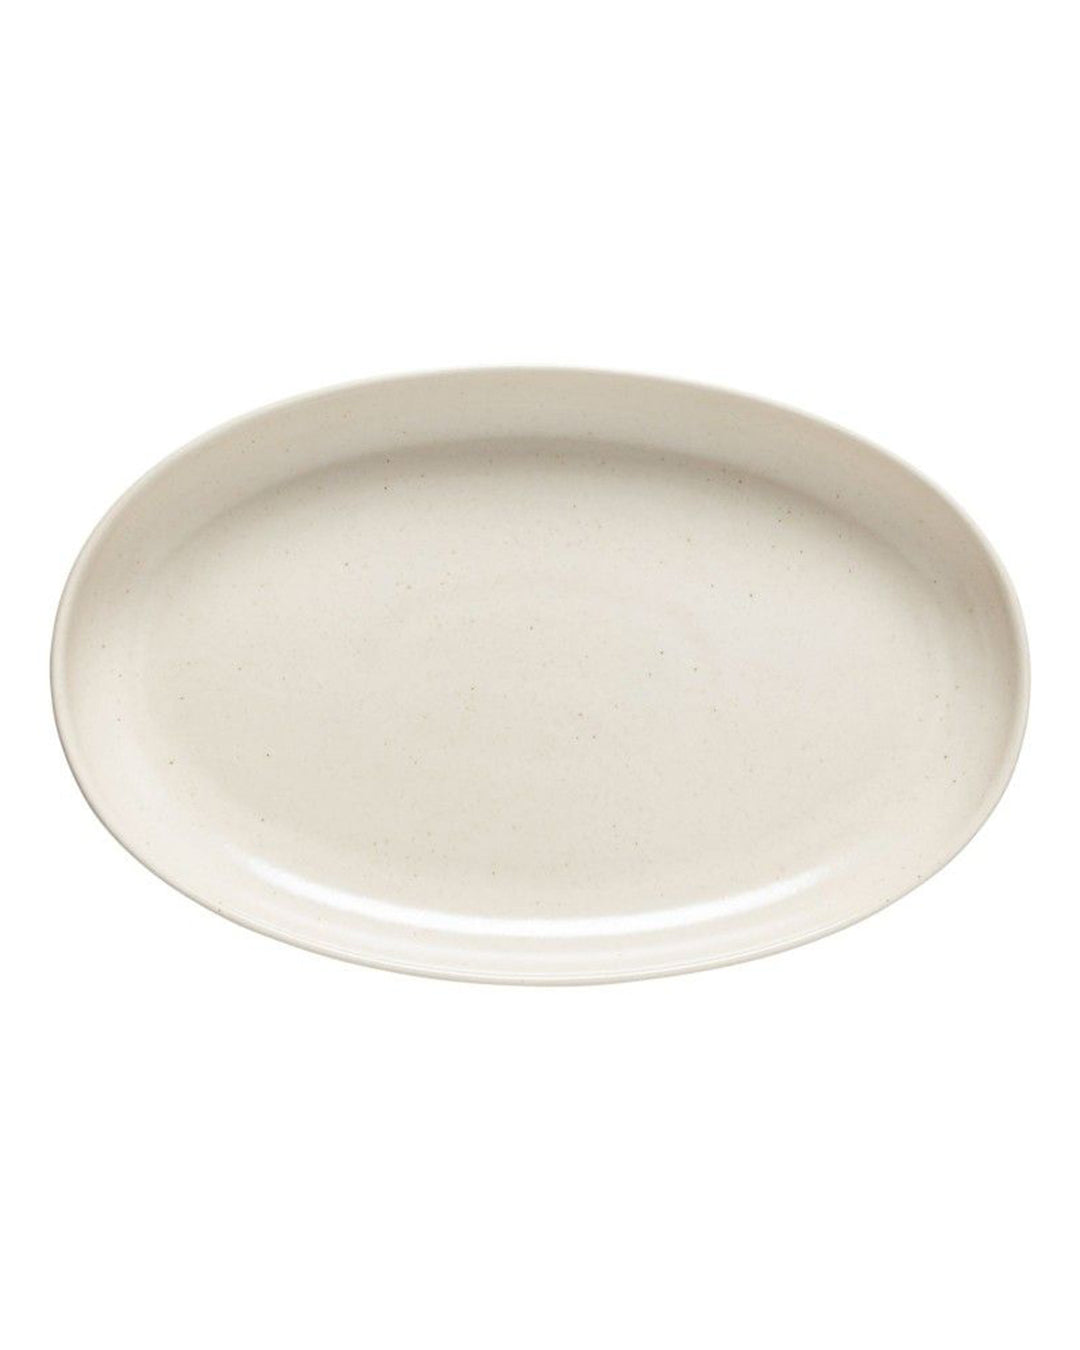 Casafina Oval Platter